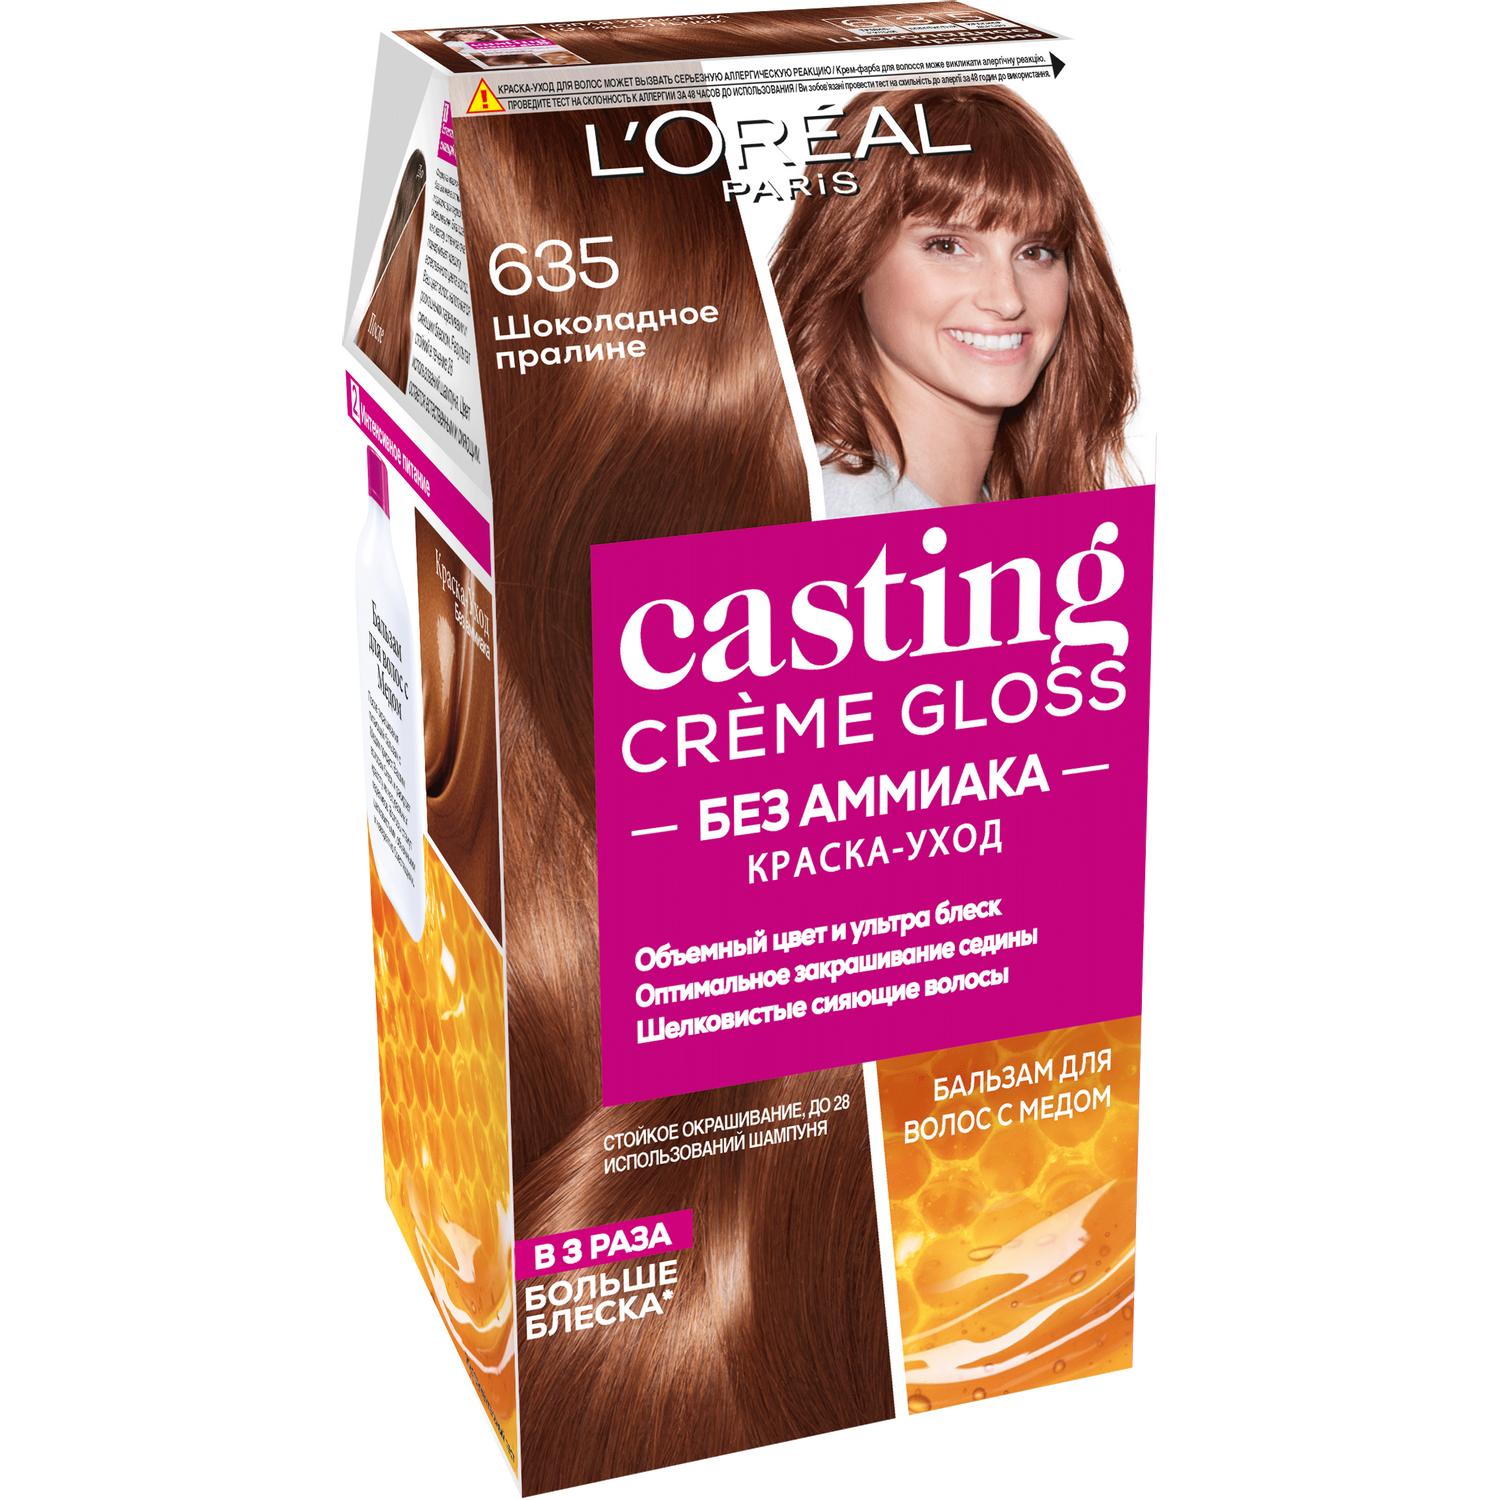 Краска для волос L'Oreal Paris Casting Creme Gloss 635 Шоколадное пралине краска l’oreal casting creme gloss 810 254 мл перламутровый русый а3124700